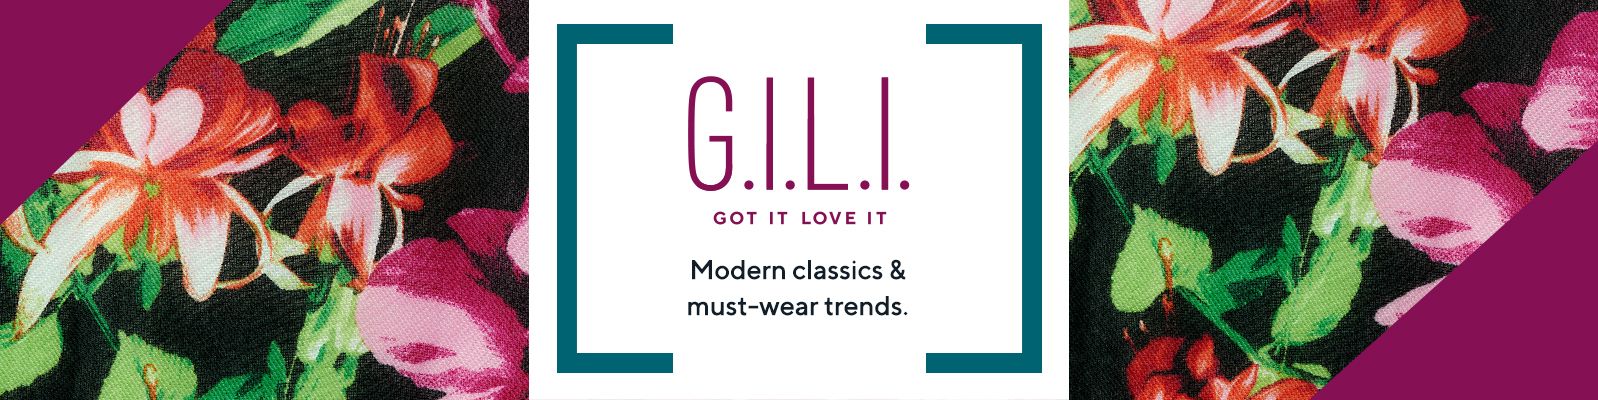 G.I.L.I. Got It Love It Modern classics & must-wear trends.